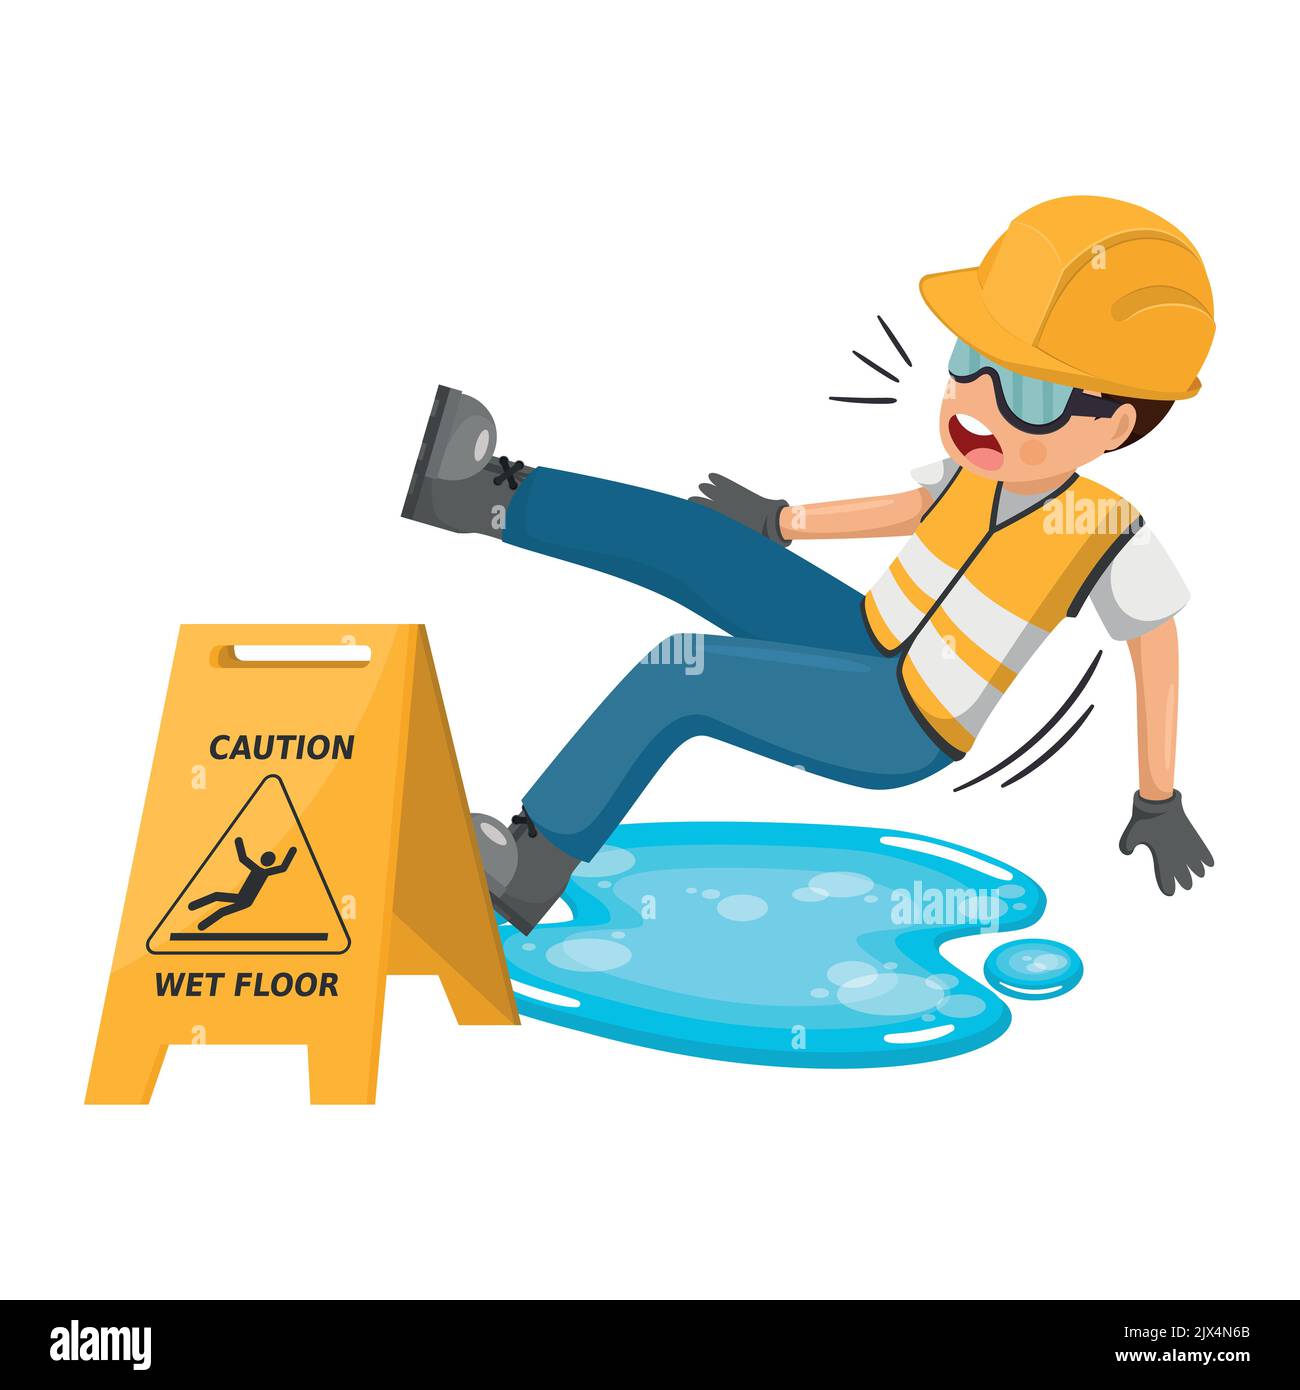 Cartello di avvertenza e avvertenza per il pavimento bagnato per evitare cadute e incidenti. Lavoratore che scivola in una pozza d'acqua. Sicurezza industriale e salute sul lavoro presso WO Illustrazione Vettoriale